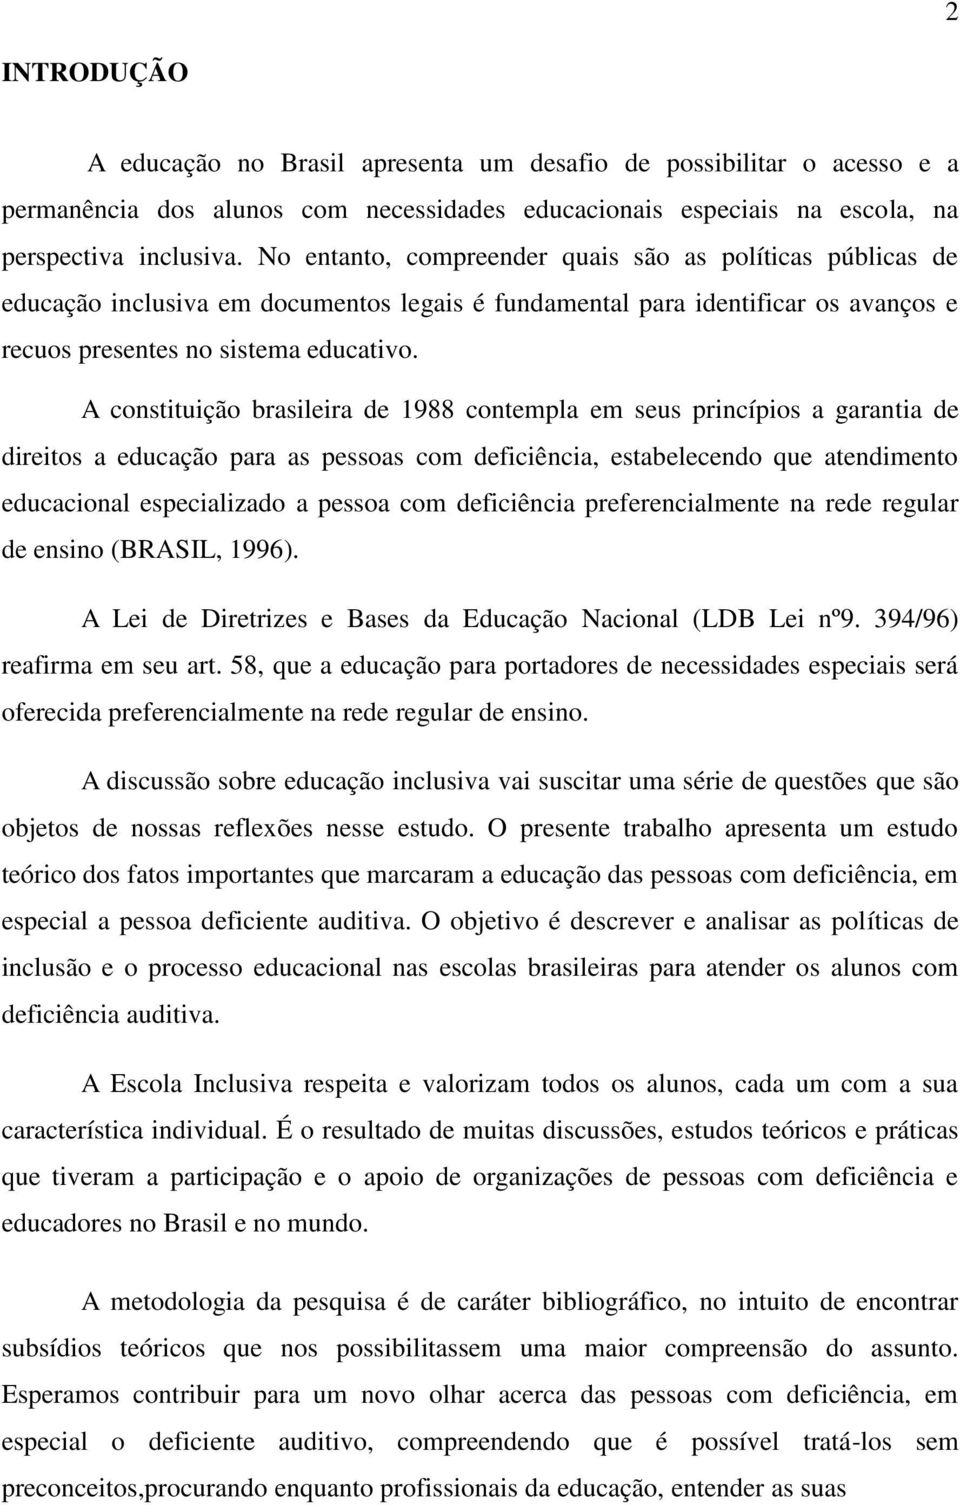 A constituição brasileira de 1988 contempla em seus princípios a garantia de direitos a educação para as pessoas com deficiência, estabelecendo que atendimento educacional especializado a pessoa com